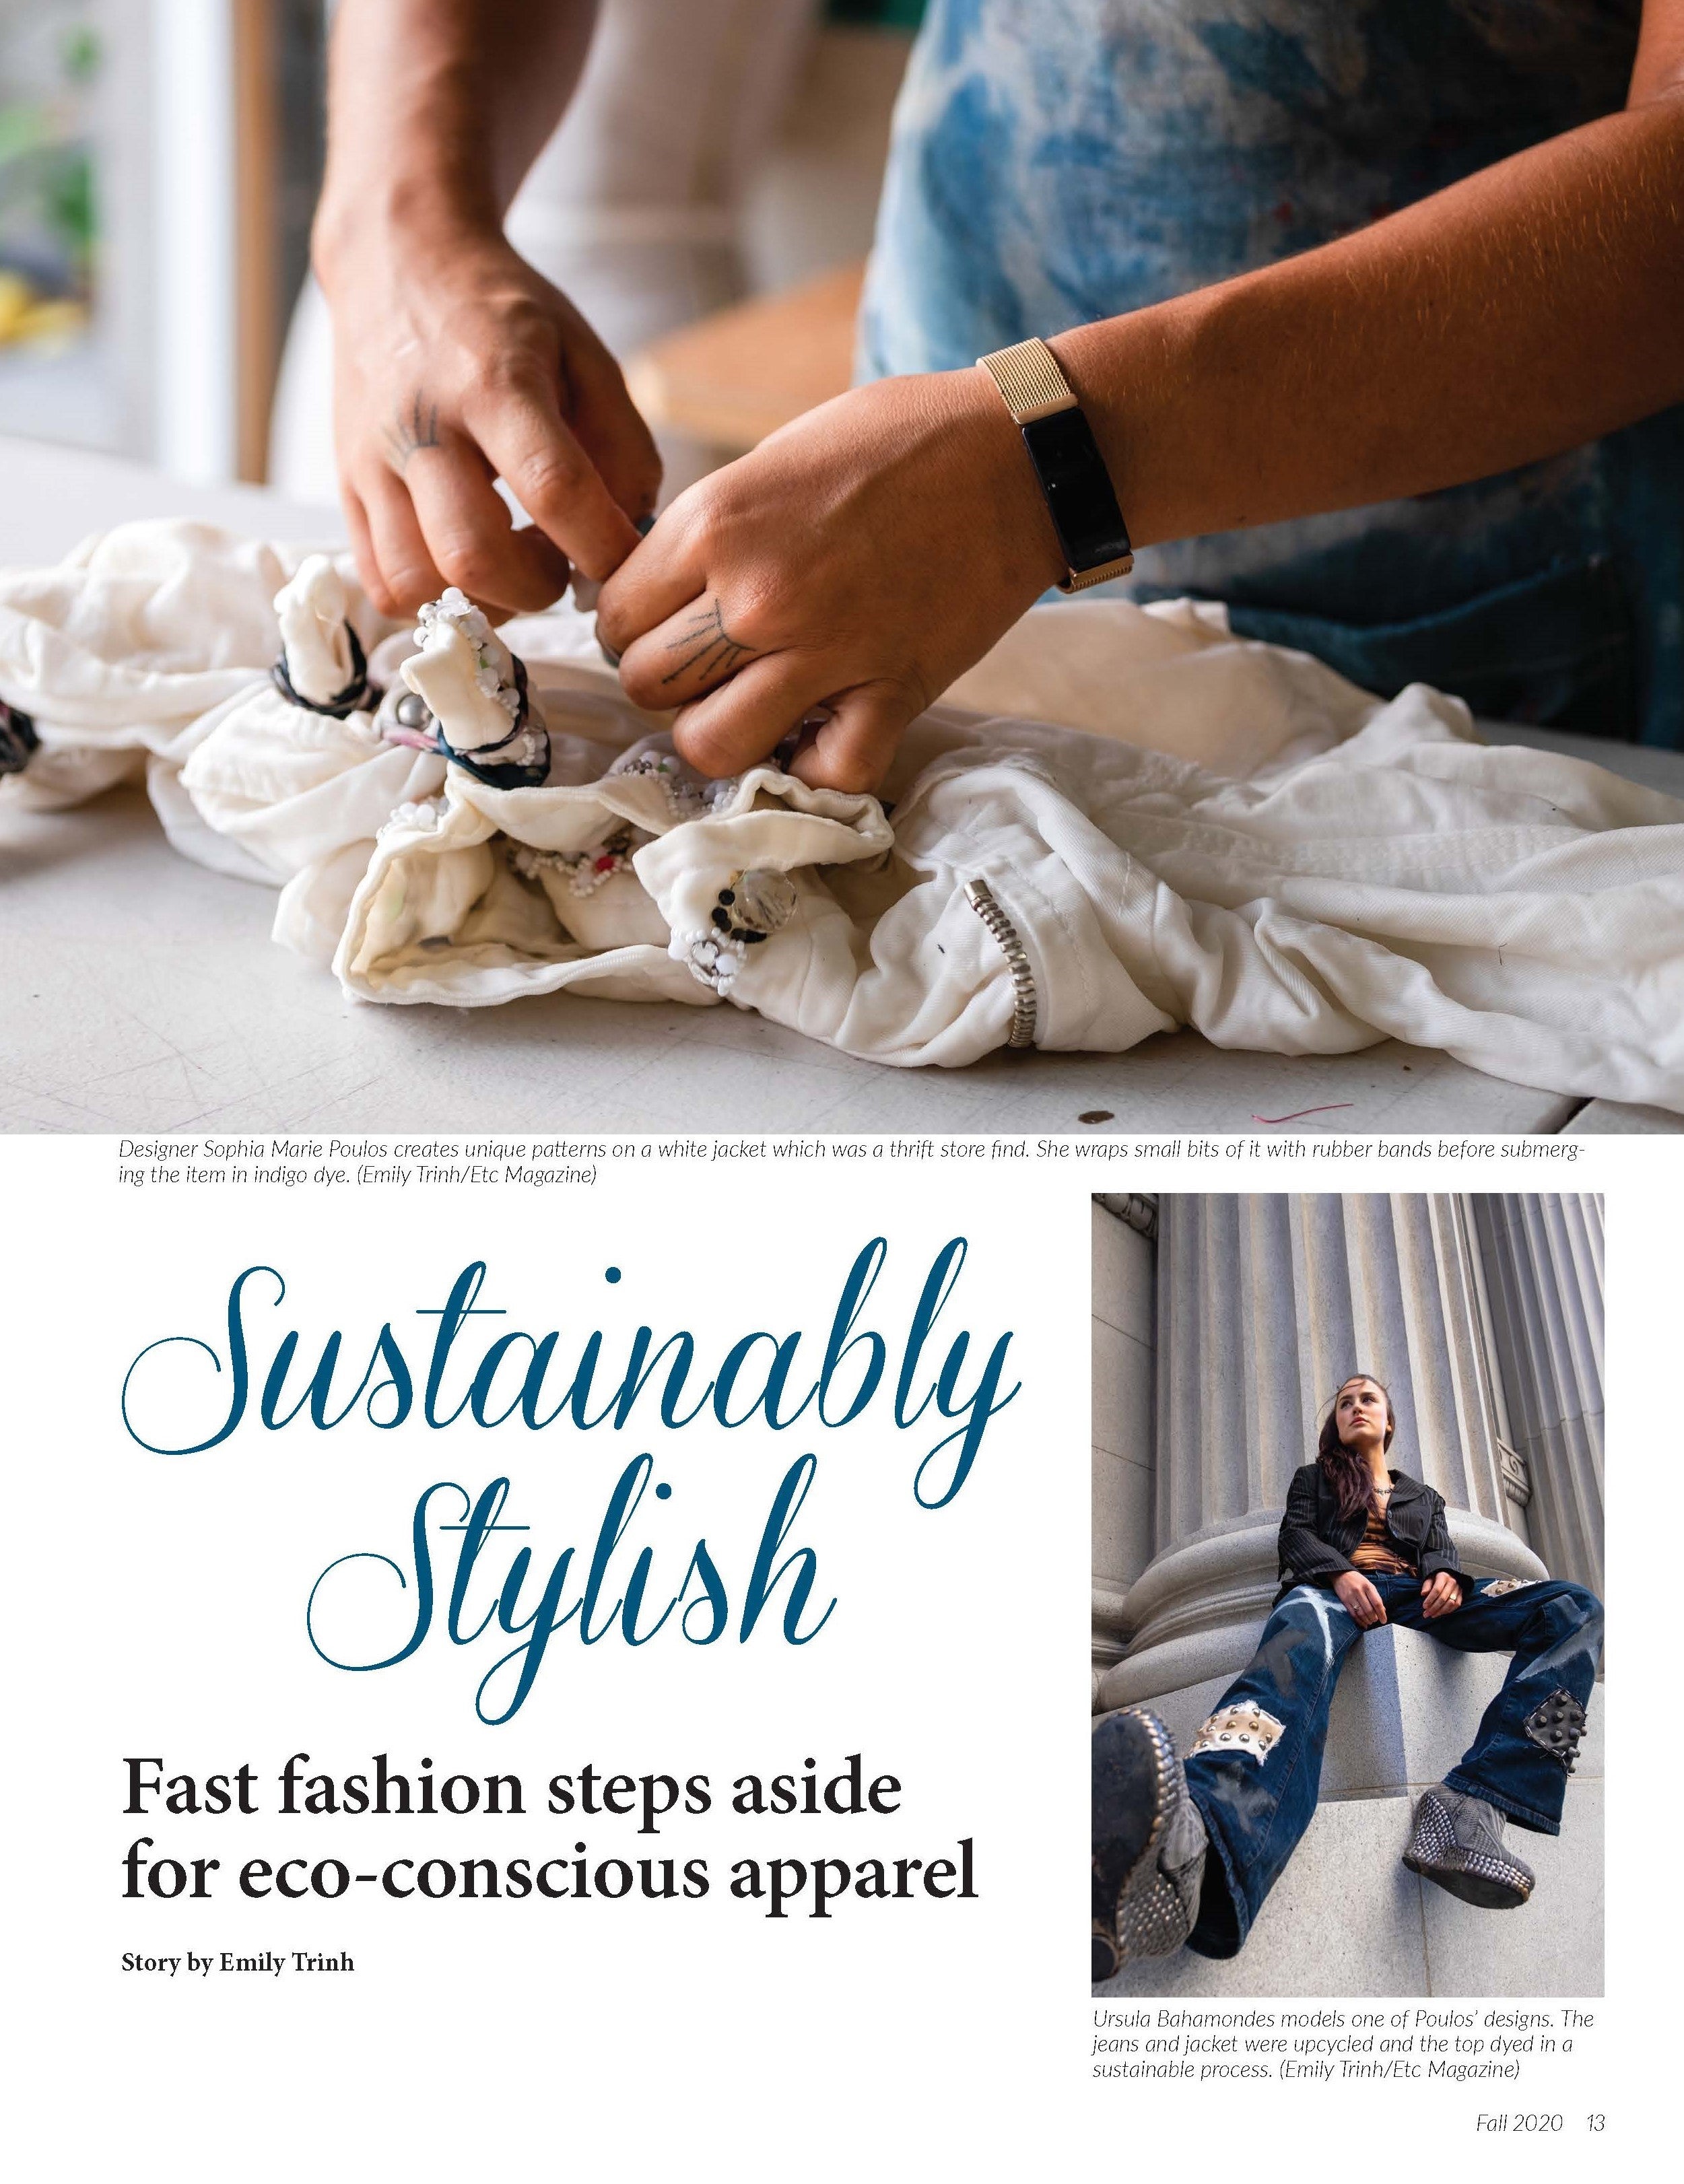 ETC Magazine - Fall 2020  ”Sustainably Stylish” - Kemily Visuals/Sophia Marie